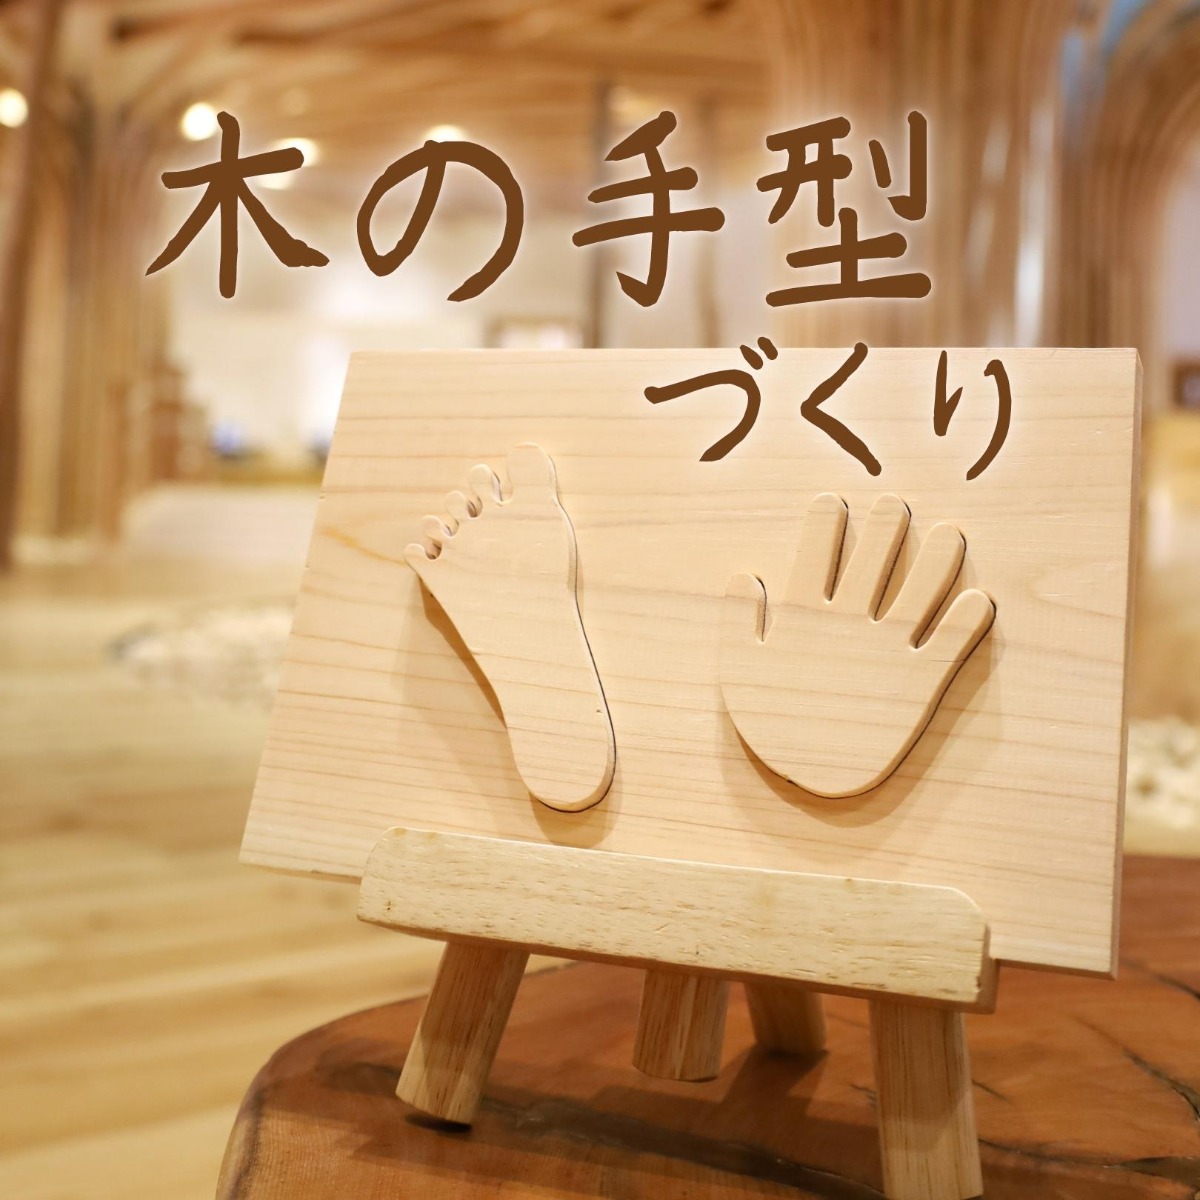 【徳島イベント情報】徳島木のおもちゃ美術館【9月】